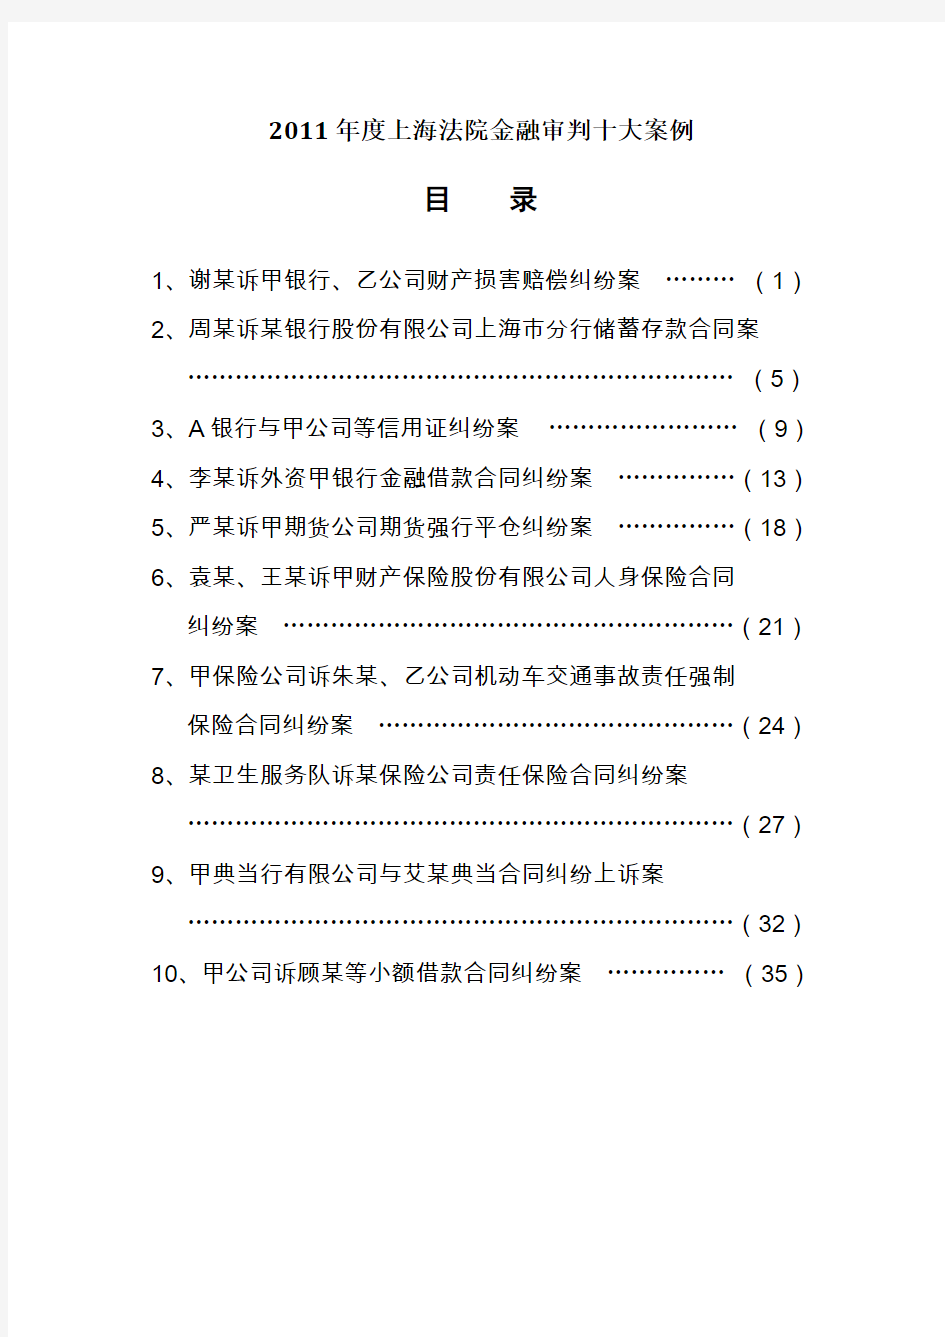 上海法院金融审判十大案例